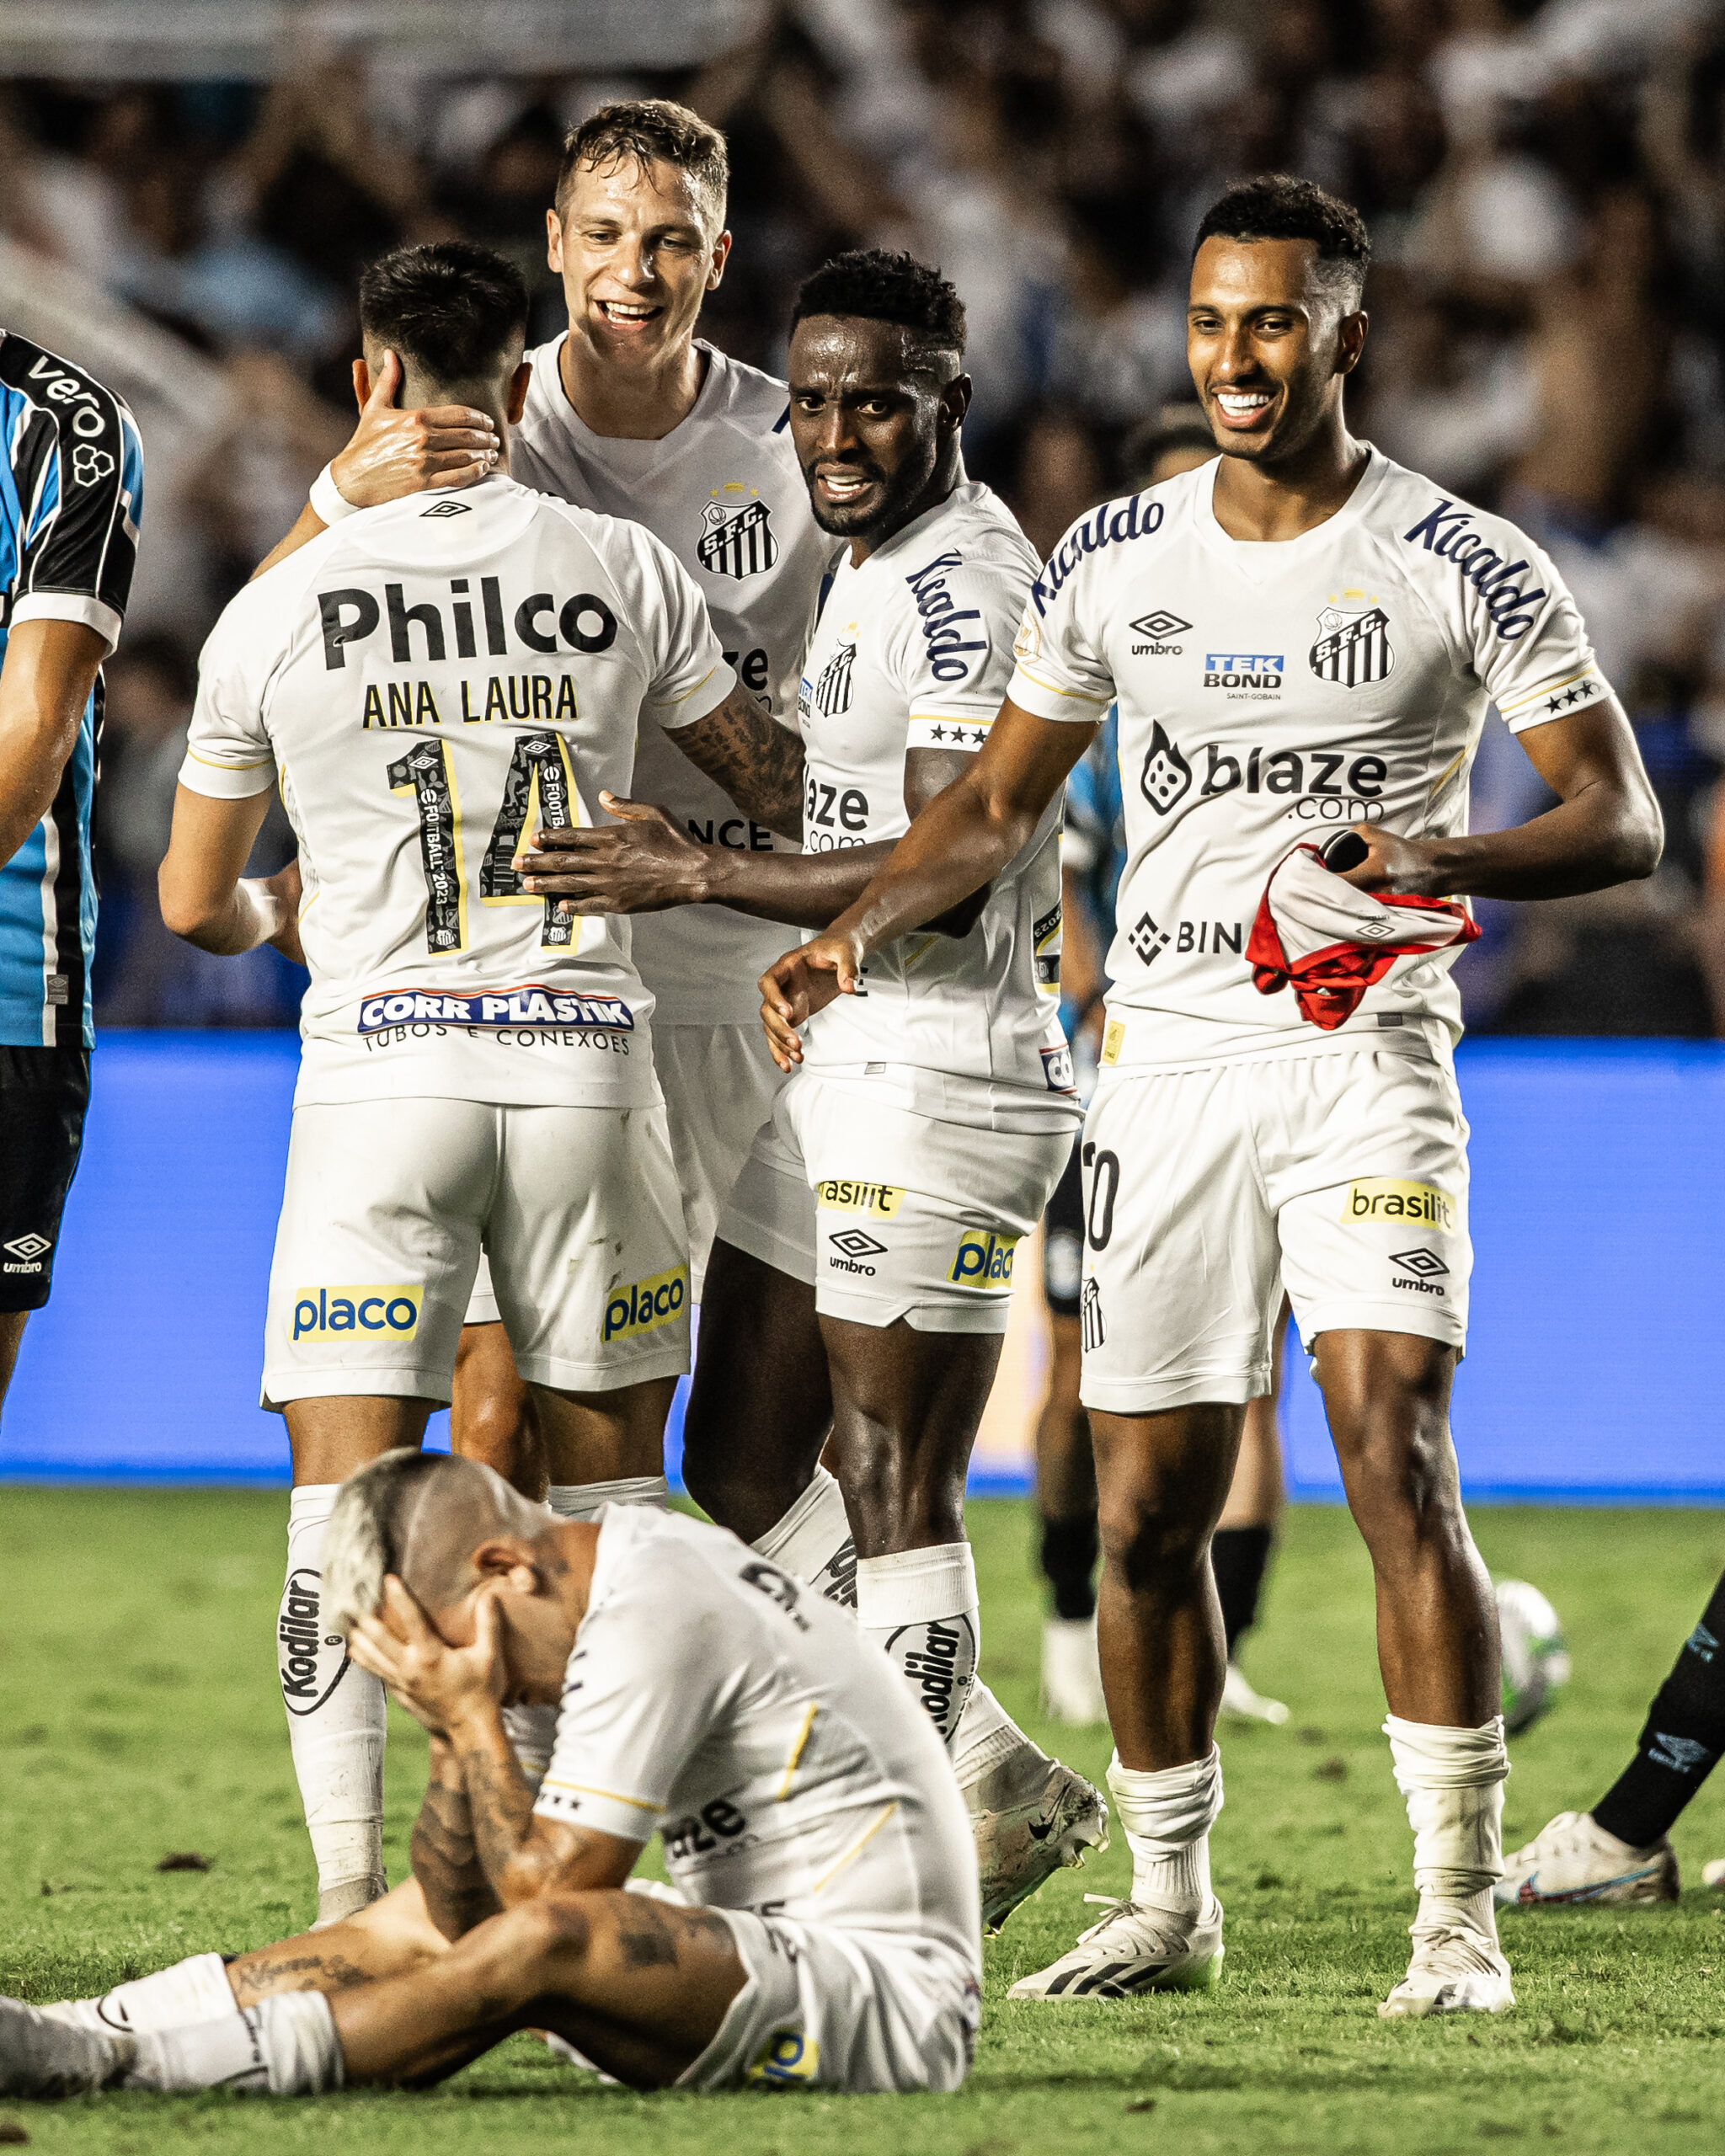 Pré-jogo: Santos x The Strongest - Libertadores 2021